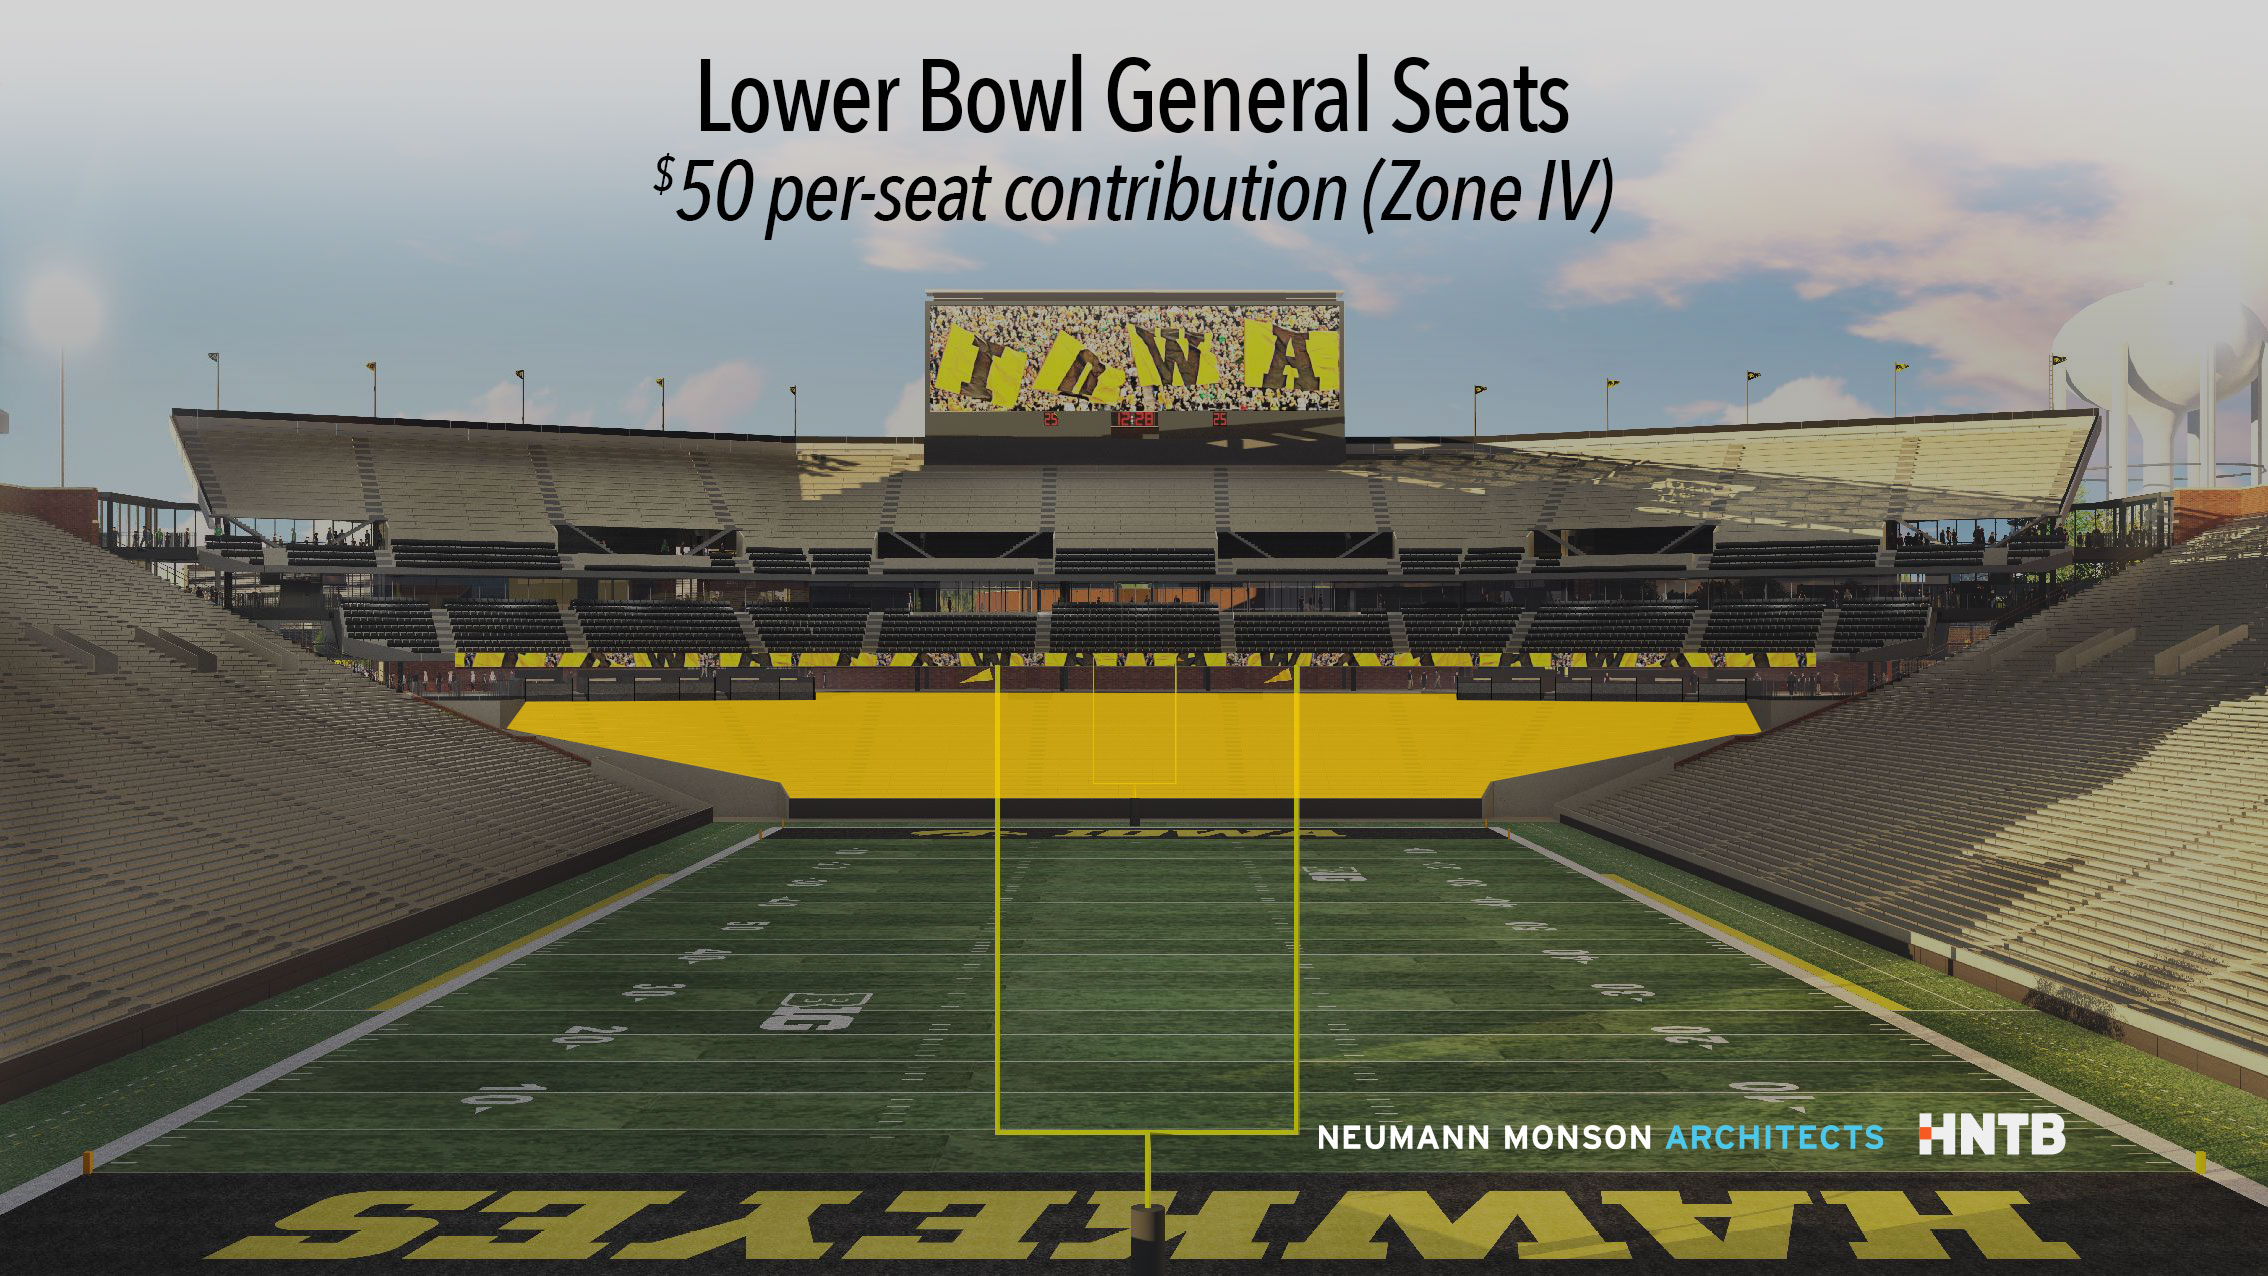 Iowa Hawkeye Stadium Seating Chart